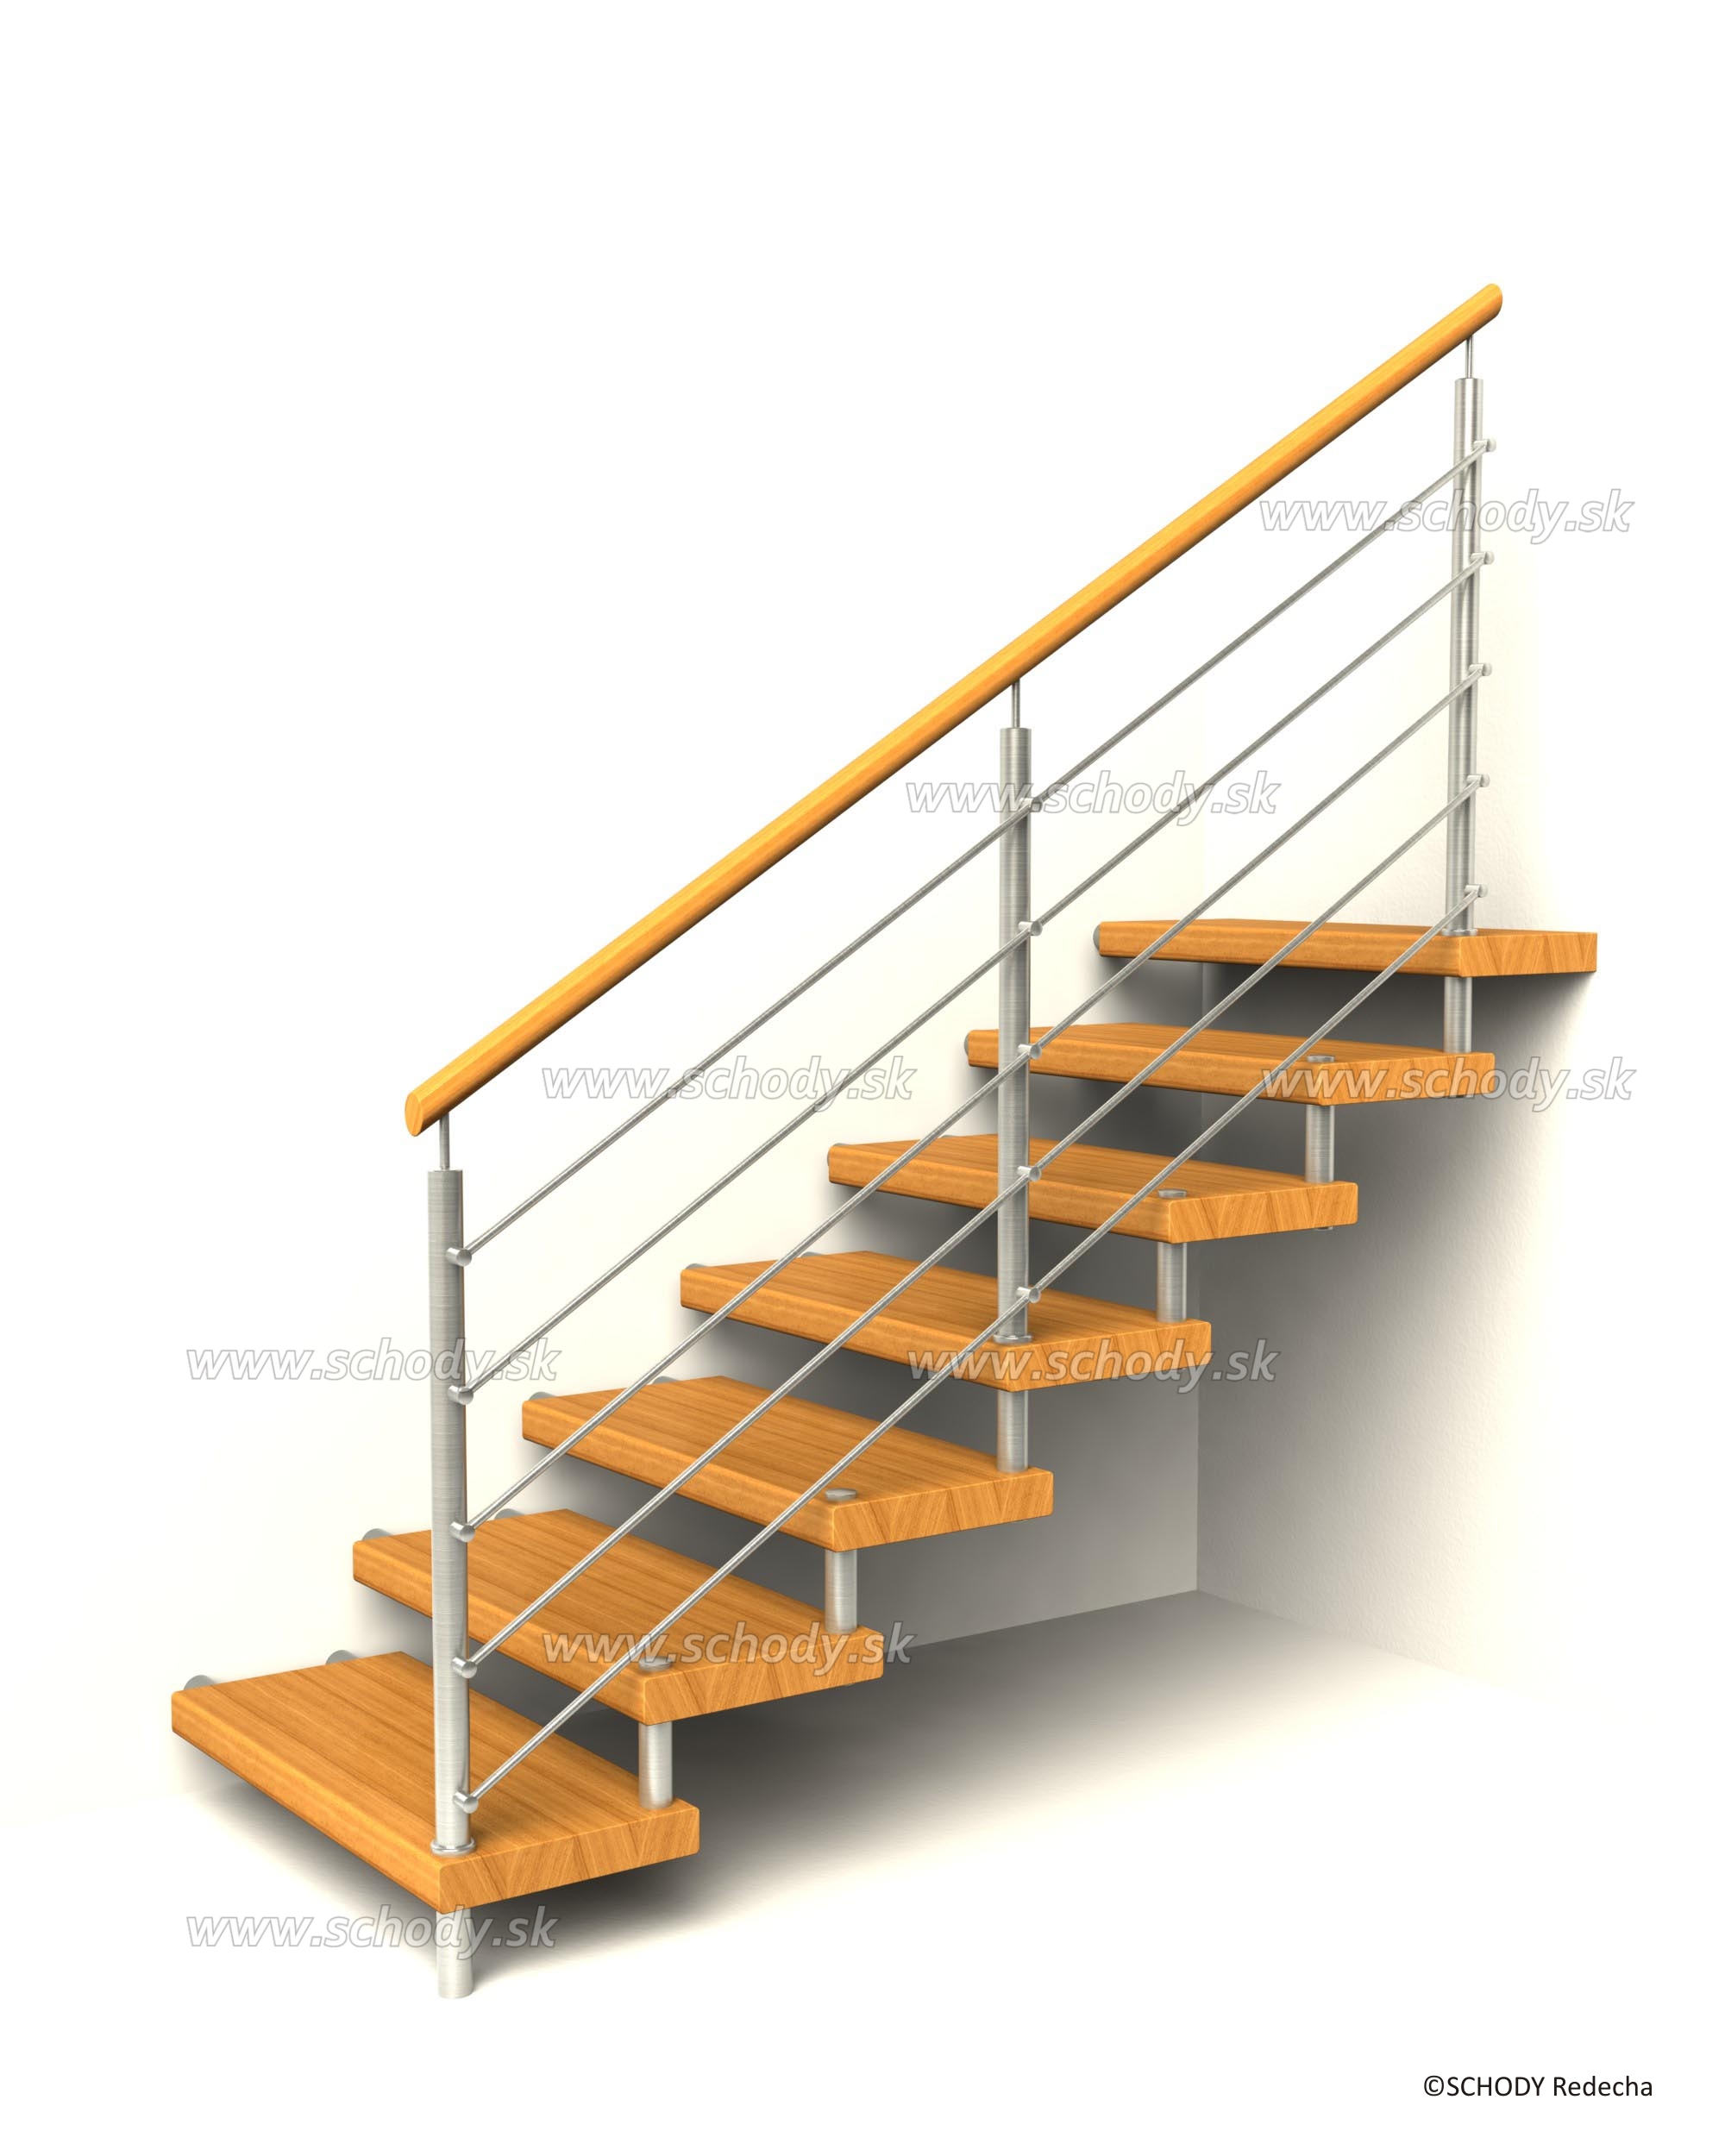 svornikova schodiste schody VIII21D1